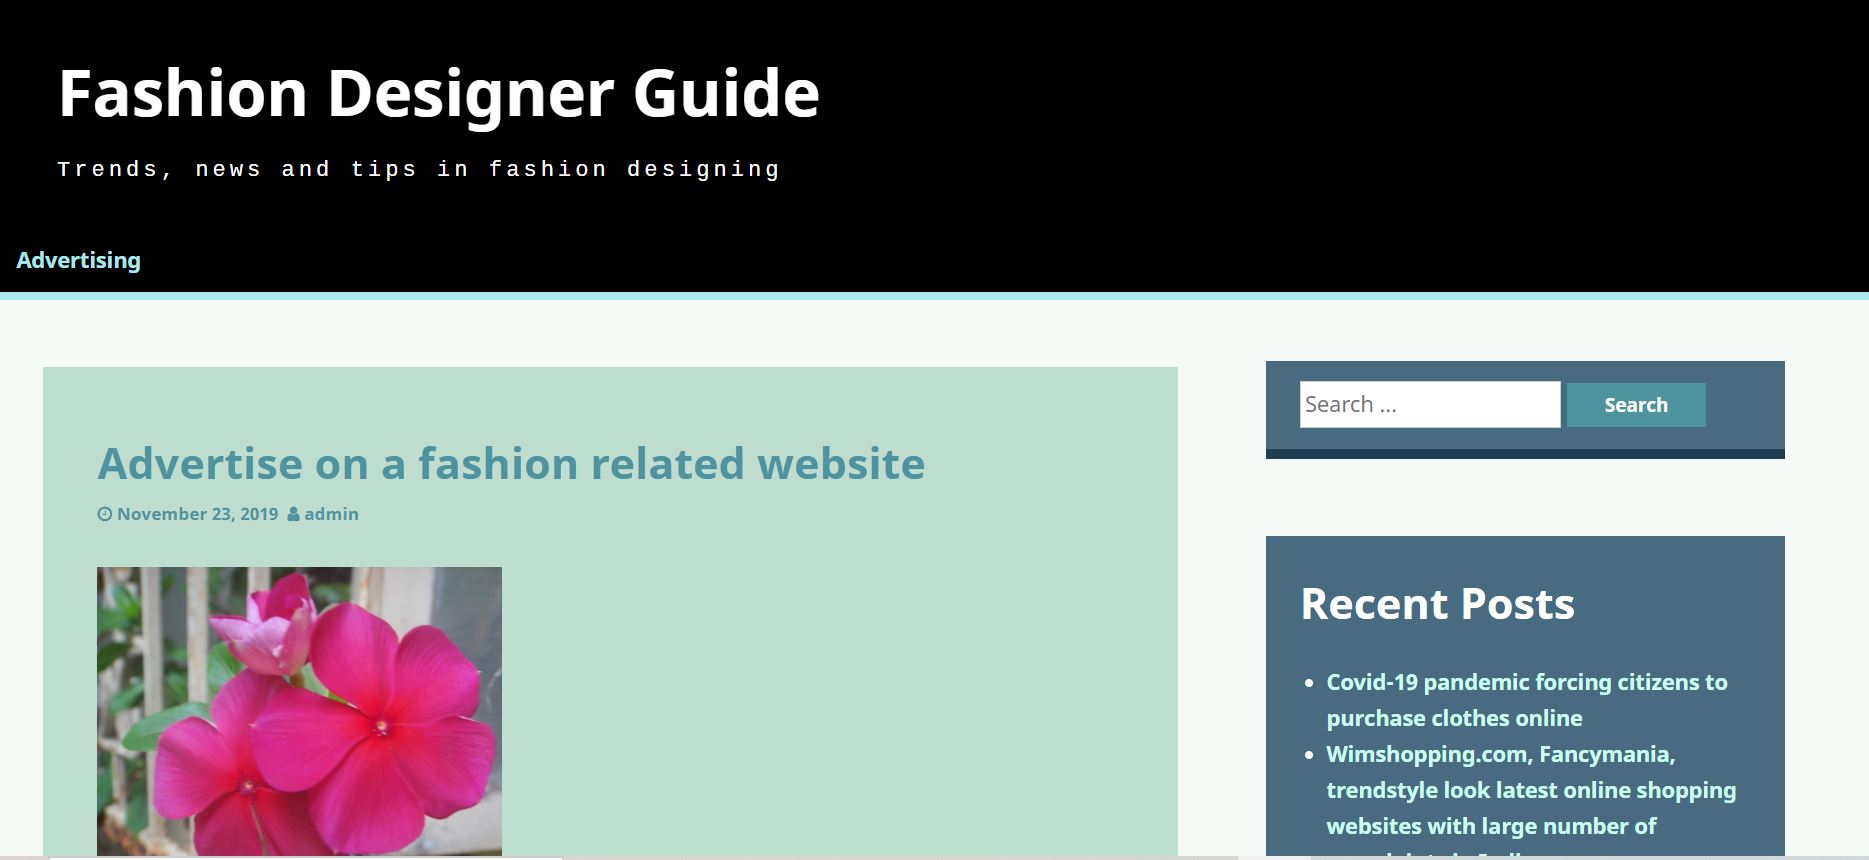 Fashion designer guide